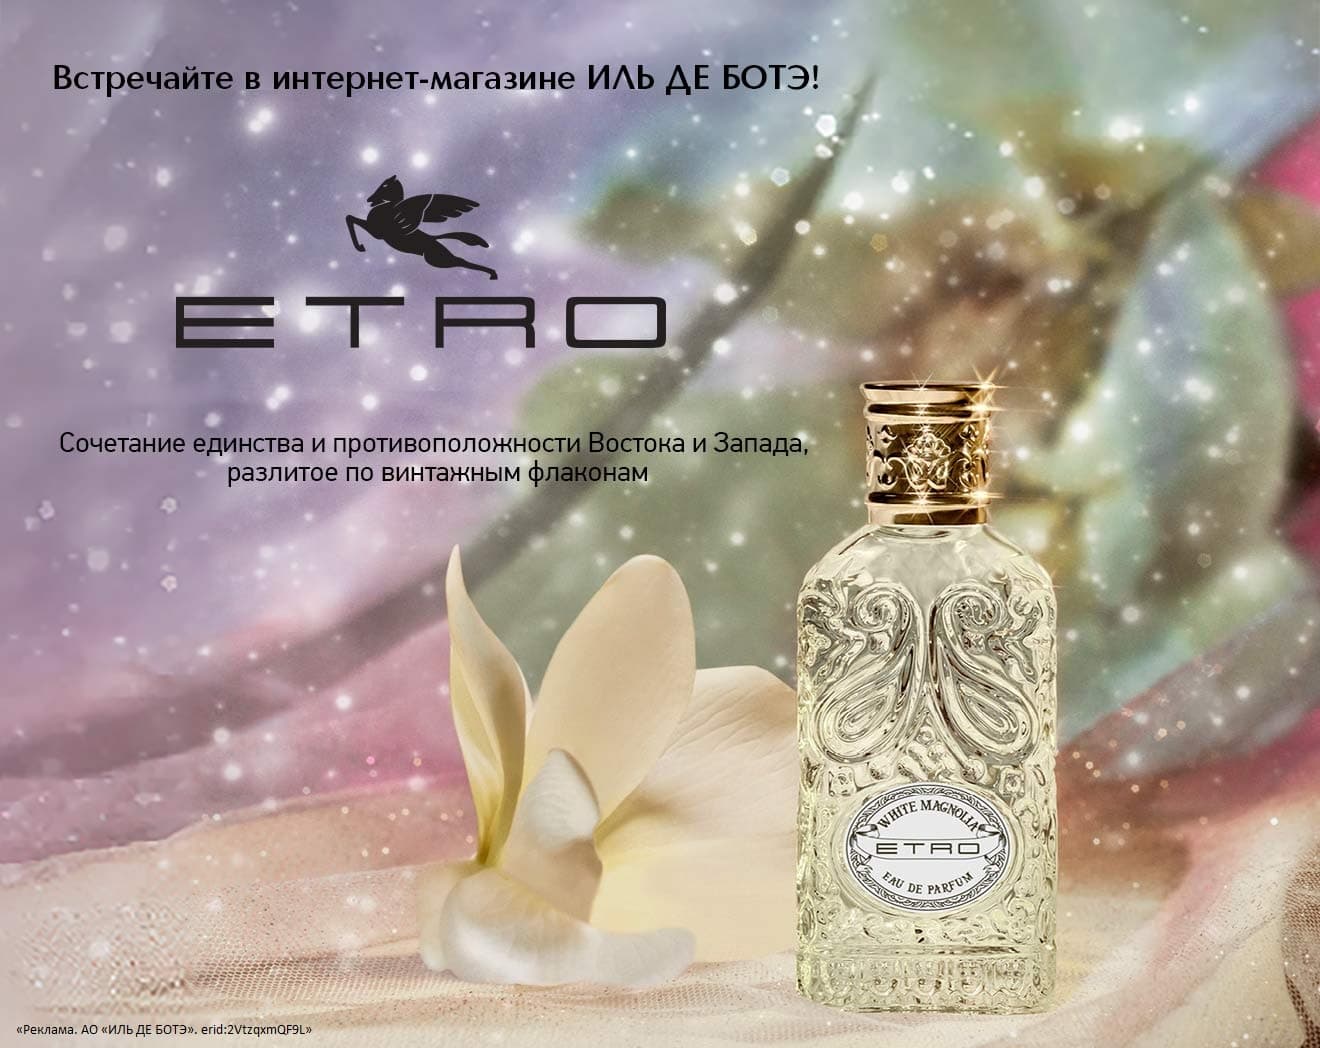 Встречайте новый бренд ETRO в ИЛЬ ДЕ БОТЭ!